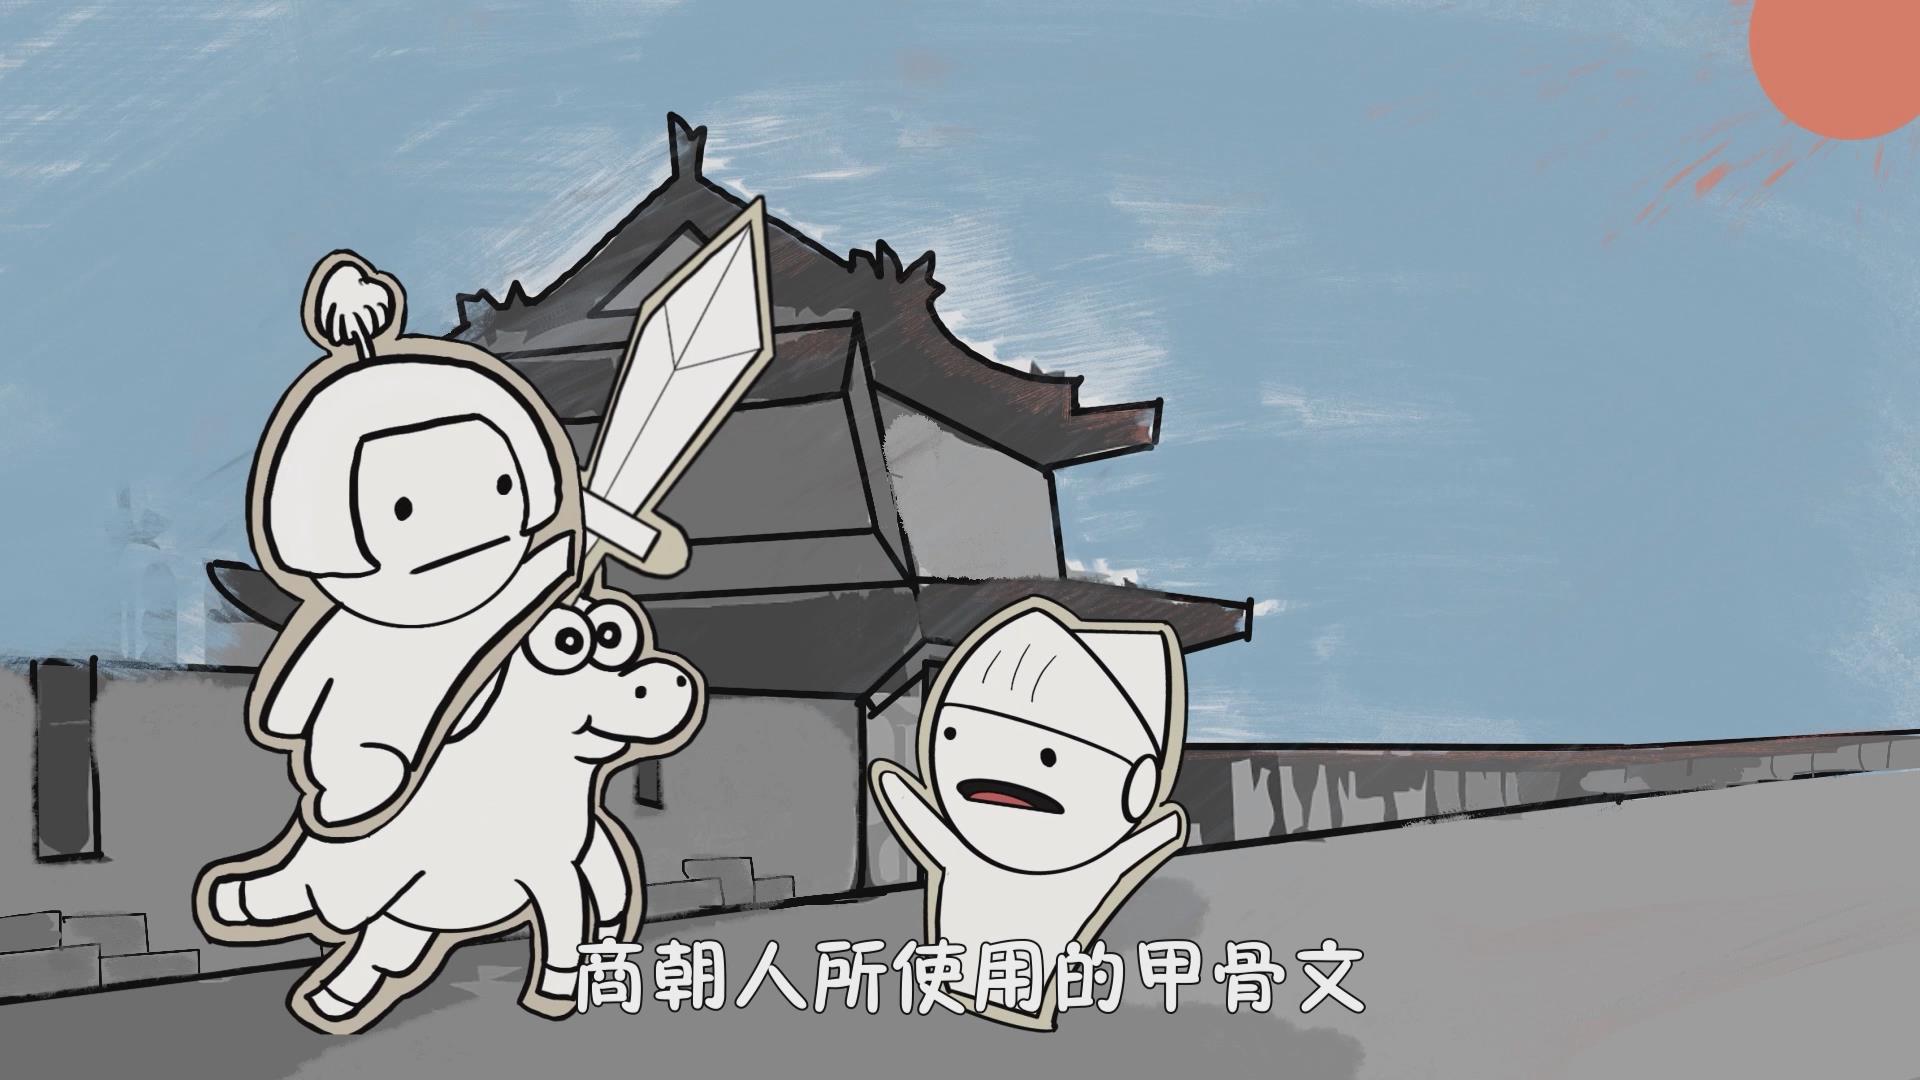 影视动漫竞赛作品——“漫话”汉字